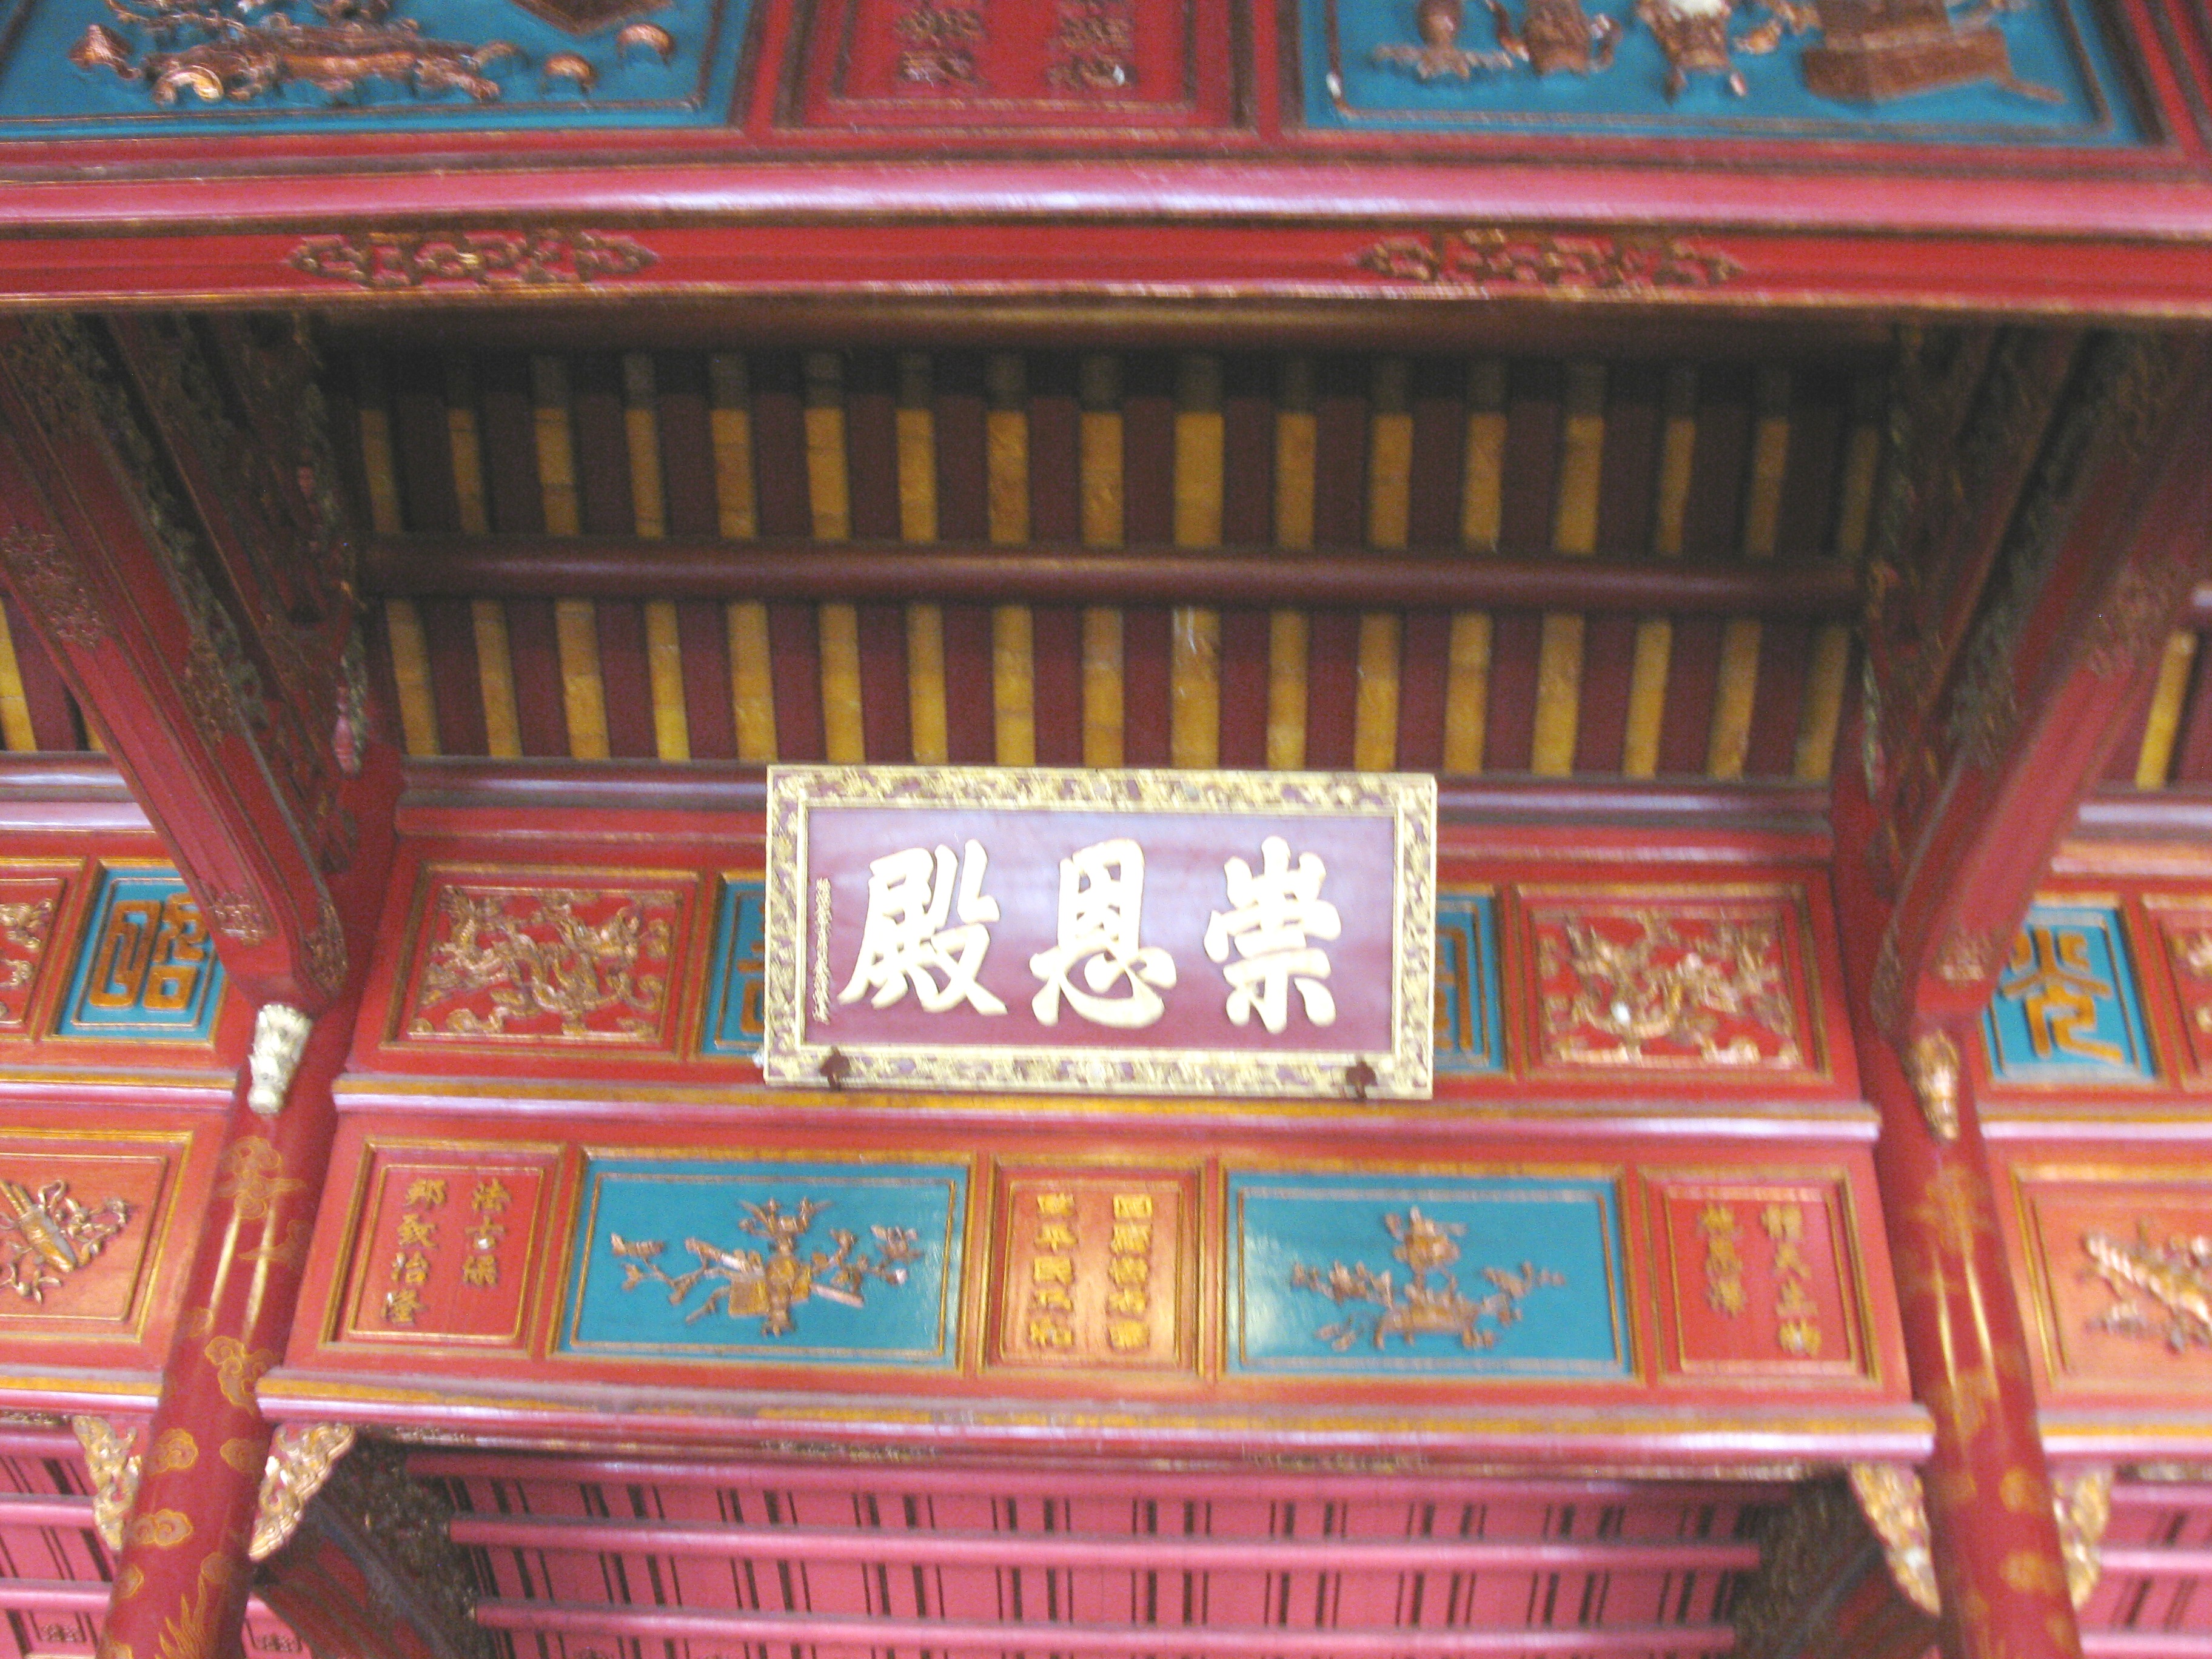 Thủ pháp quy hoạch kiến trúc Lăng của Hoàng đế Minh Mạng, triều Nguyễn  (1802-1945), Việt Nam - Tạp chí Kiến Trúc